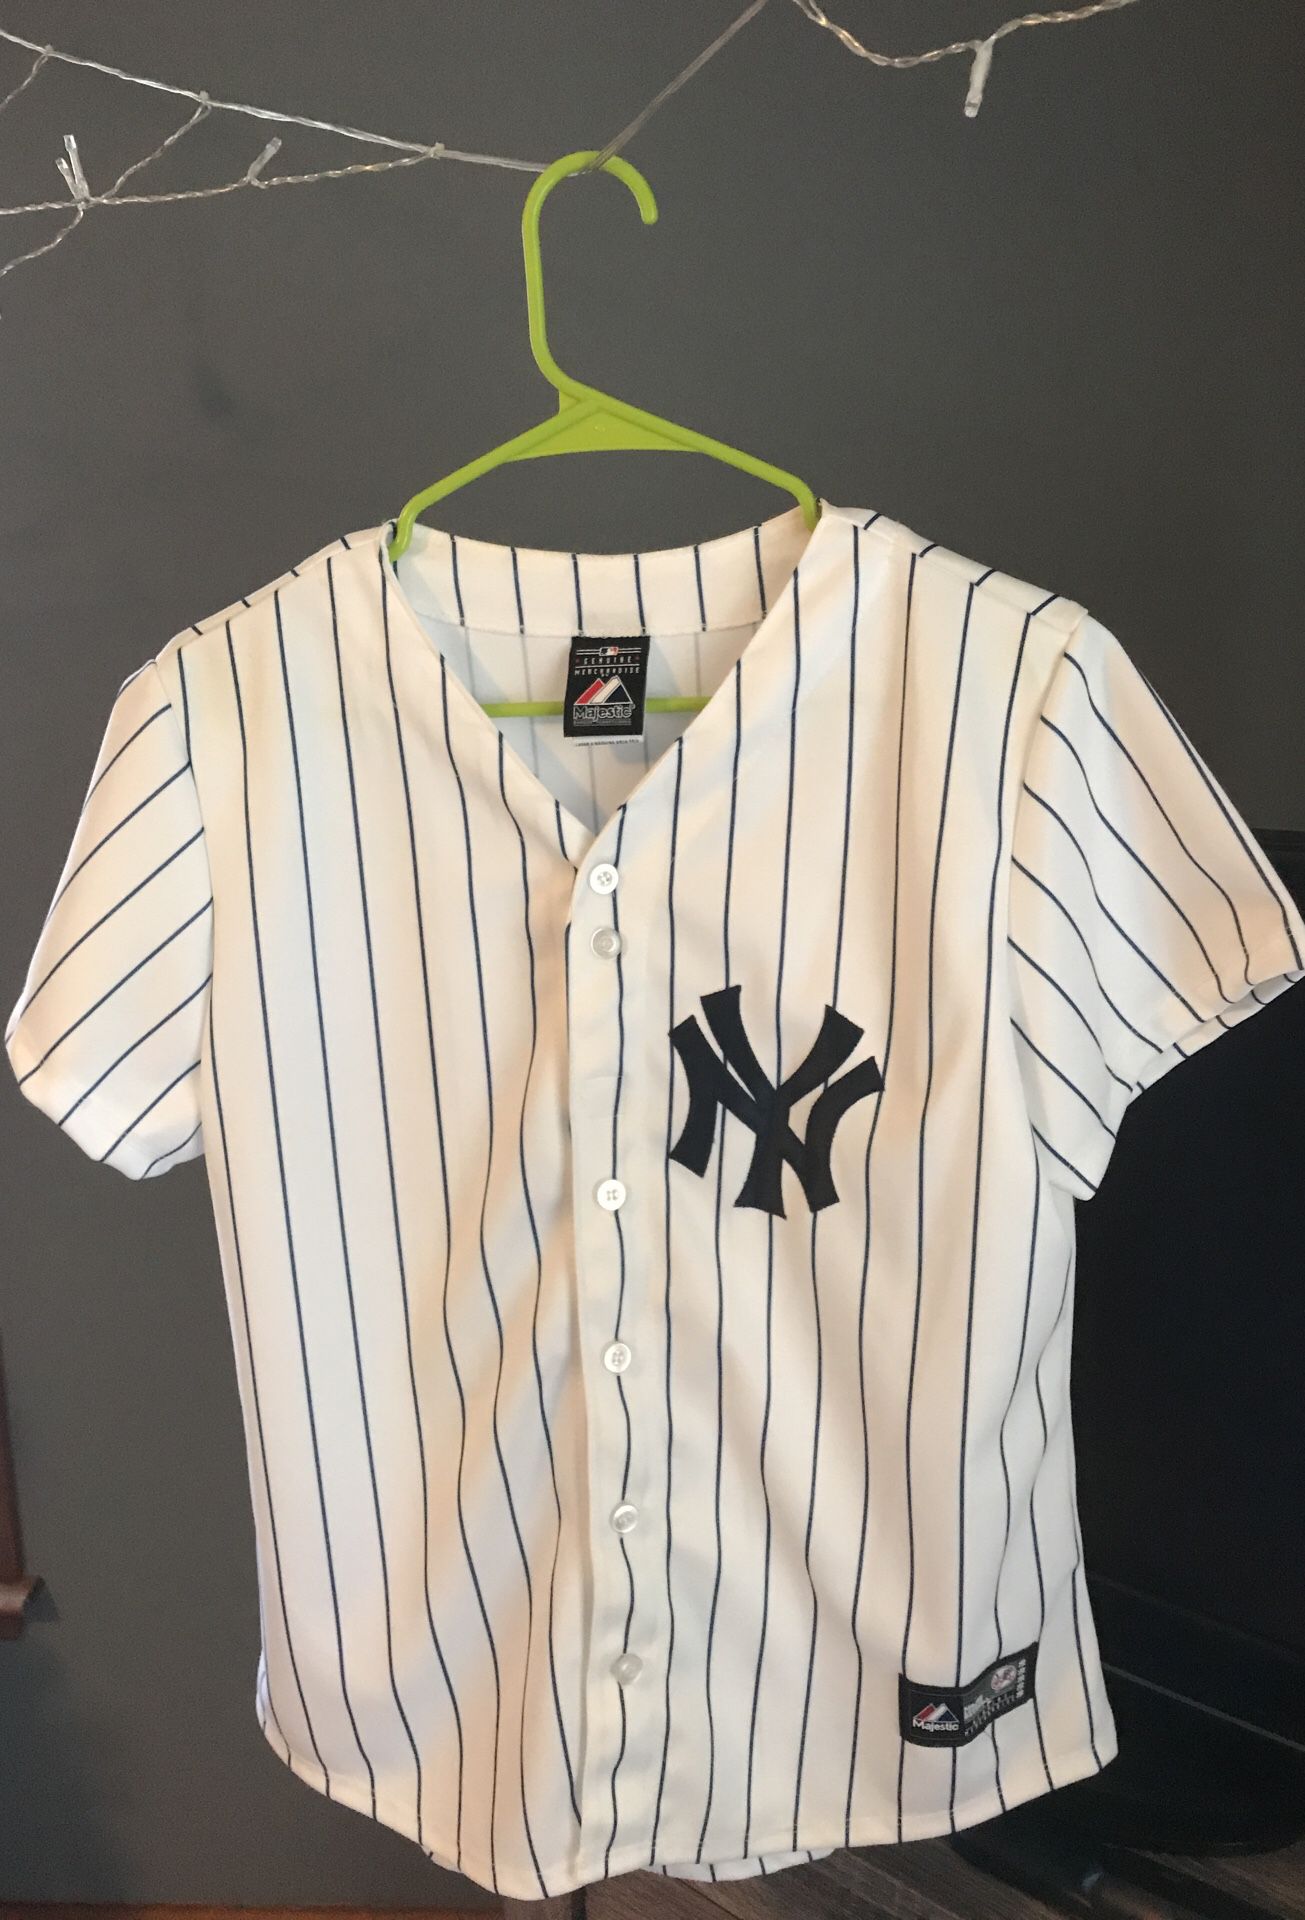 NY baseball jersey shirt